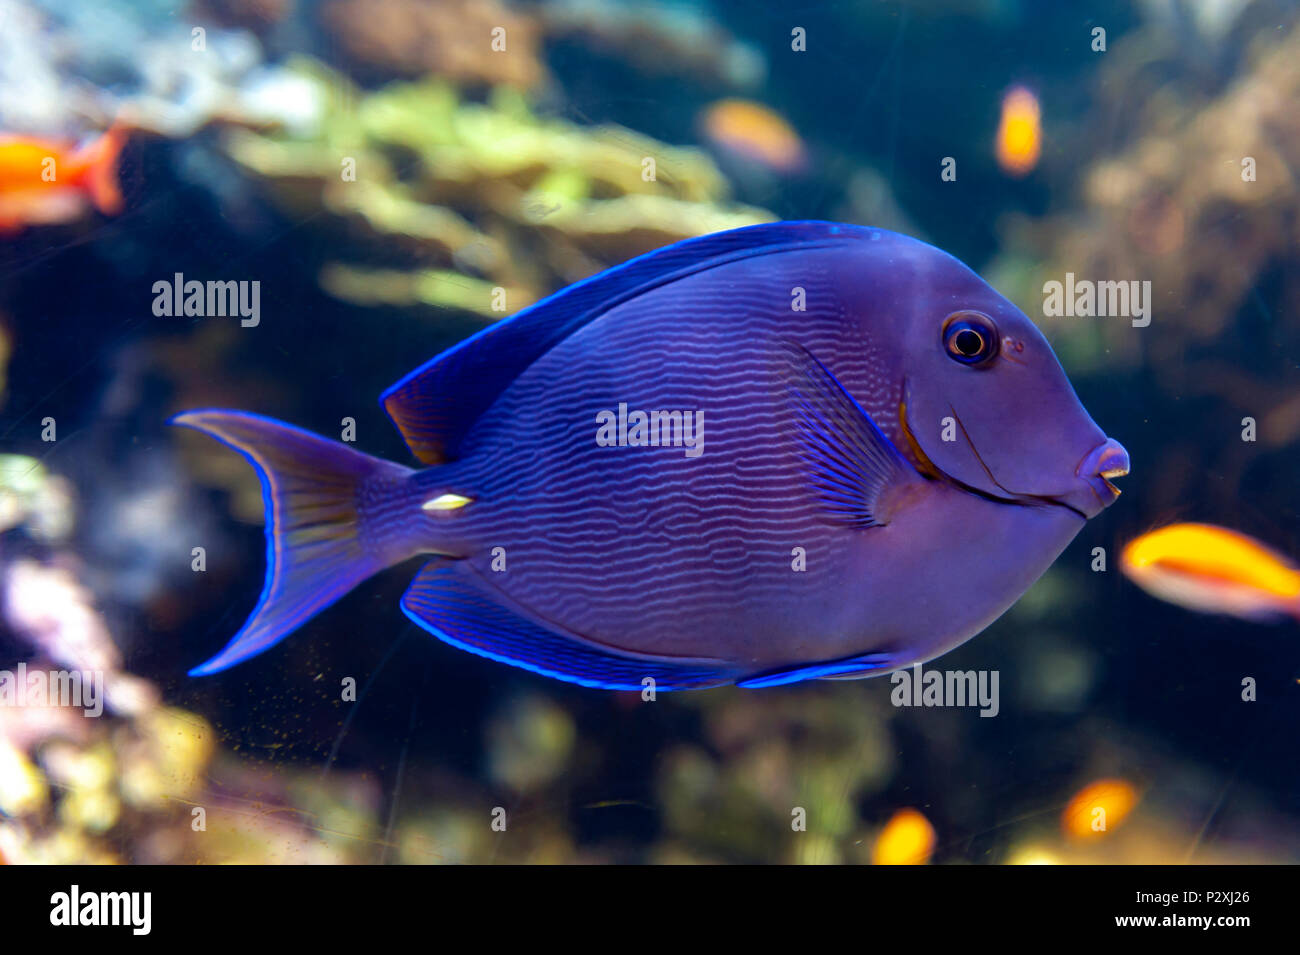 Un des poissons de récifs coralliens de Blue Tang (Acanthurus coeruleus), un chirurgien avec d'autres noms tels que le bleu de l'Atlantique blue tang, salon de coiffure, médecin bleu Banque D'Images